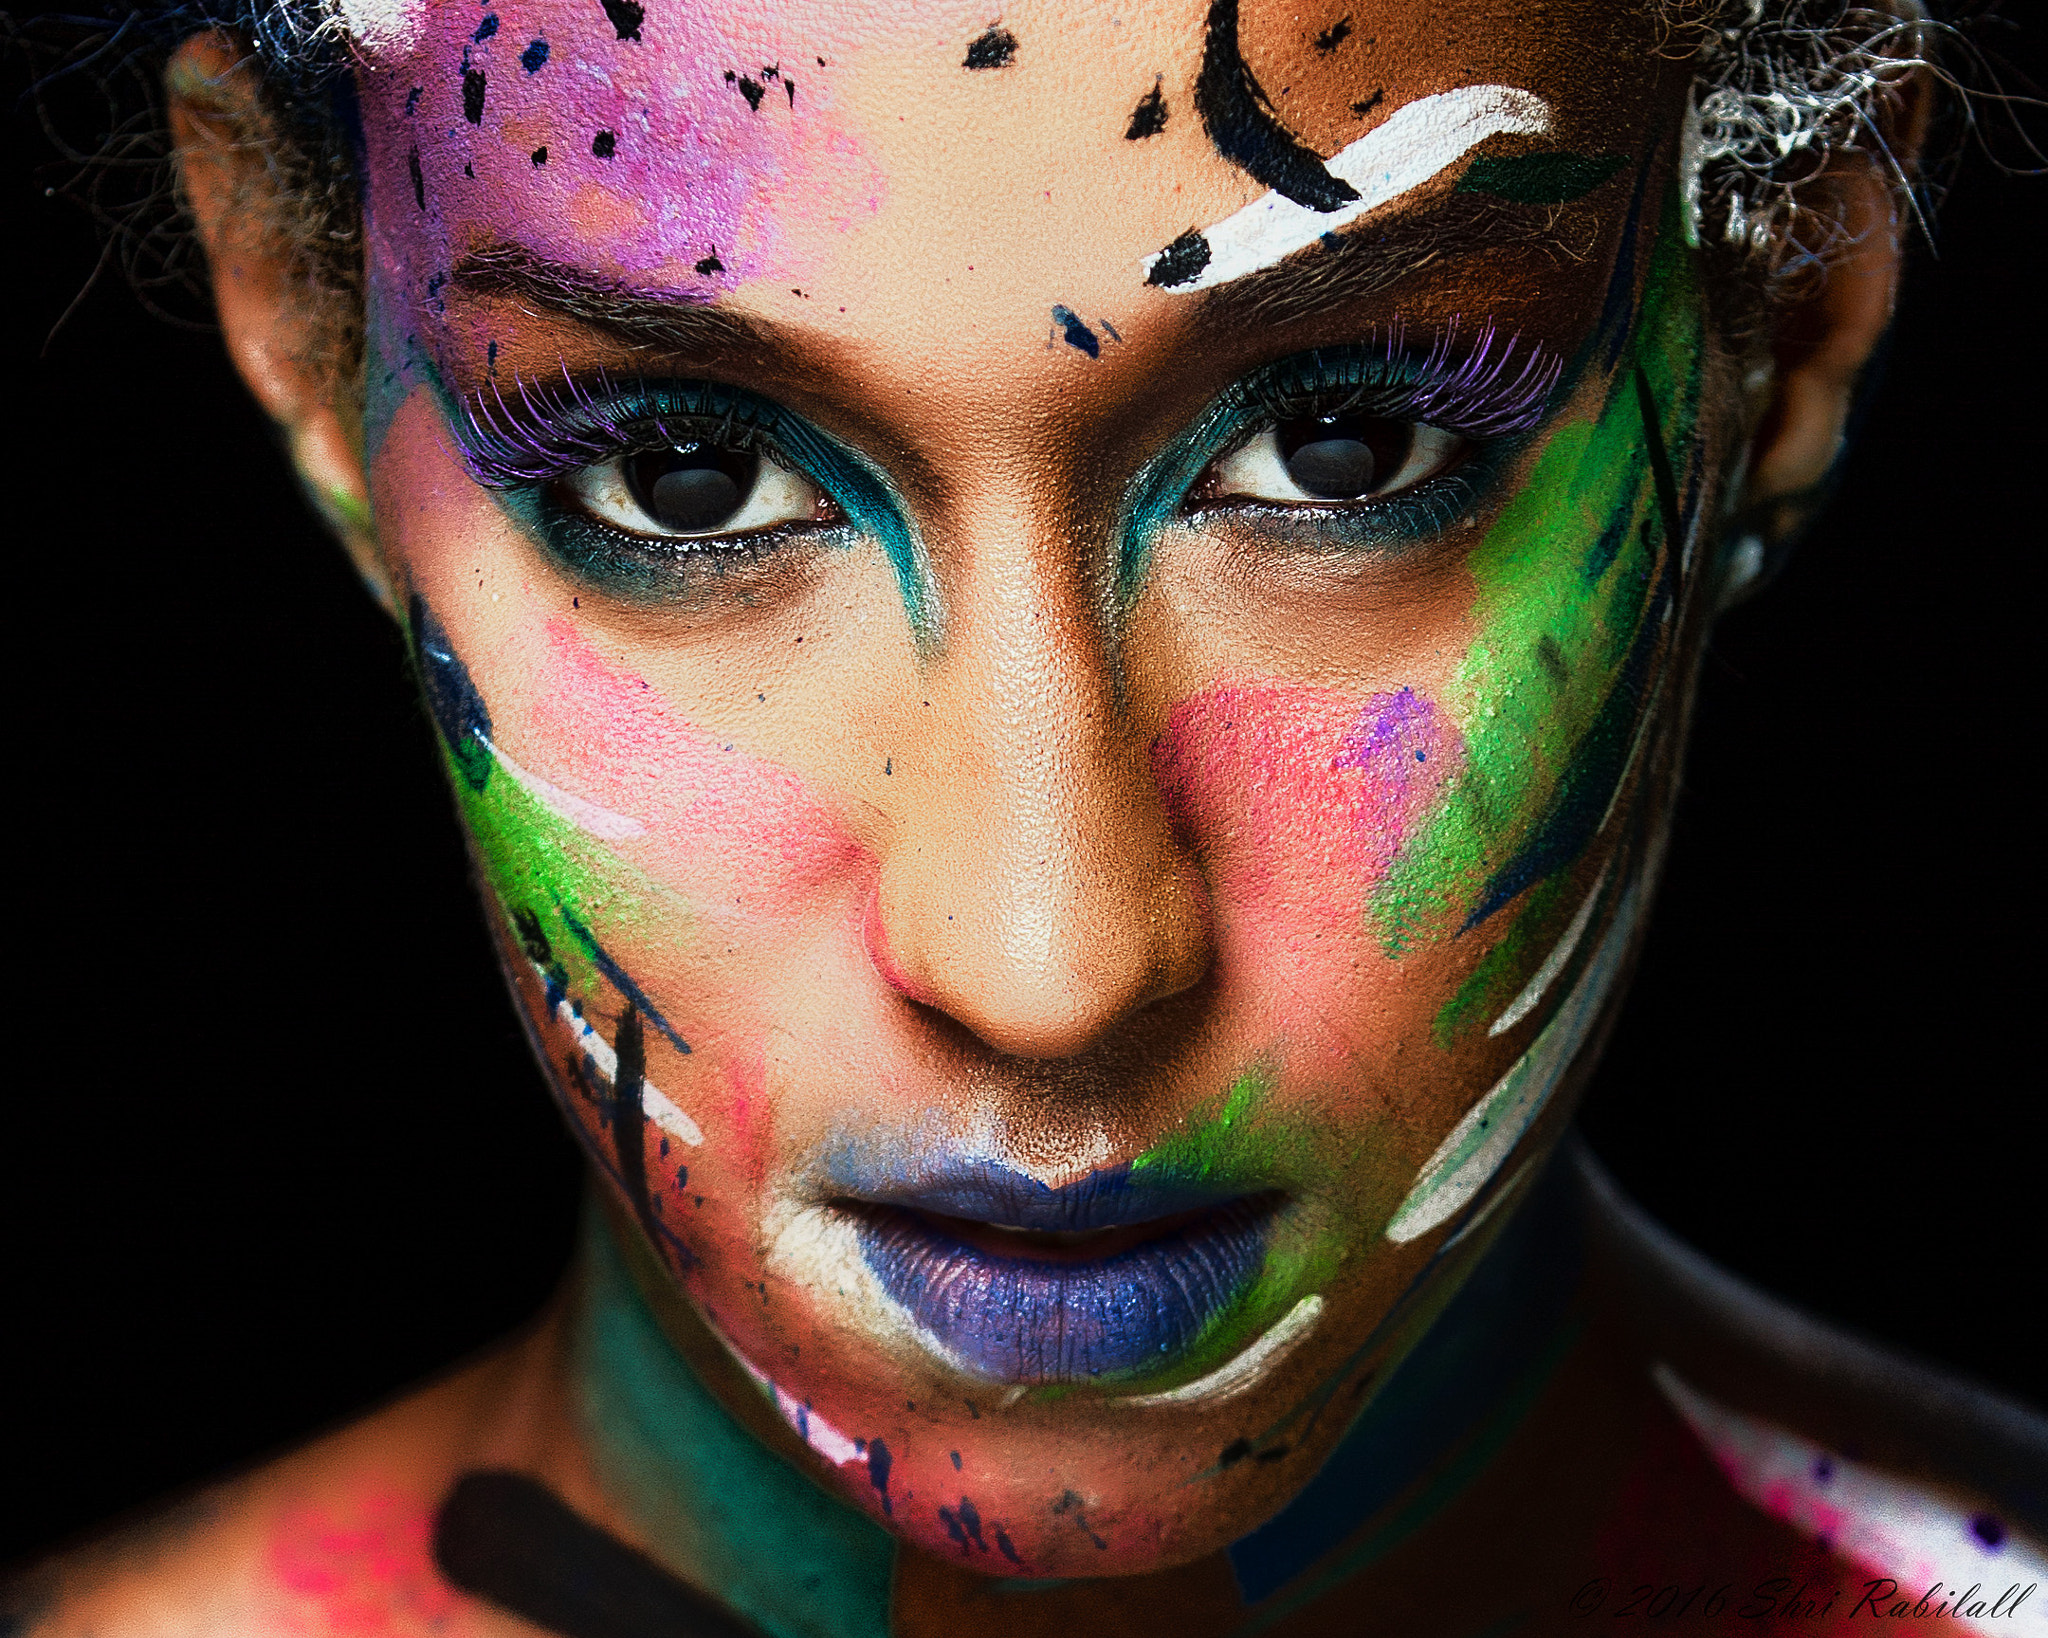 Shri Rabilall Makeup Closeup Colorful Body Paint Women Face Portrait Model 500px 2048x1638